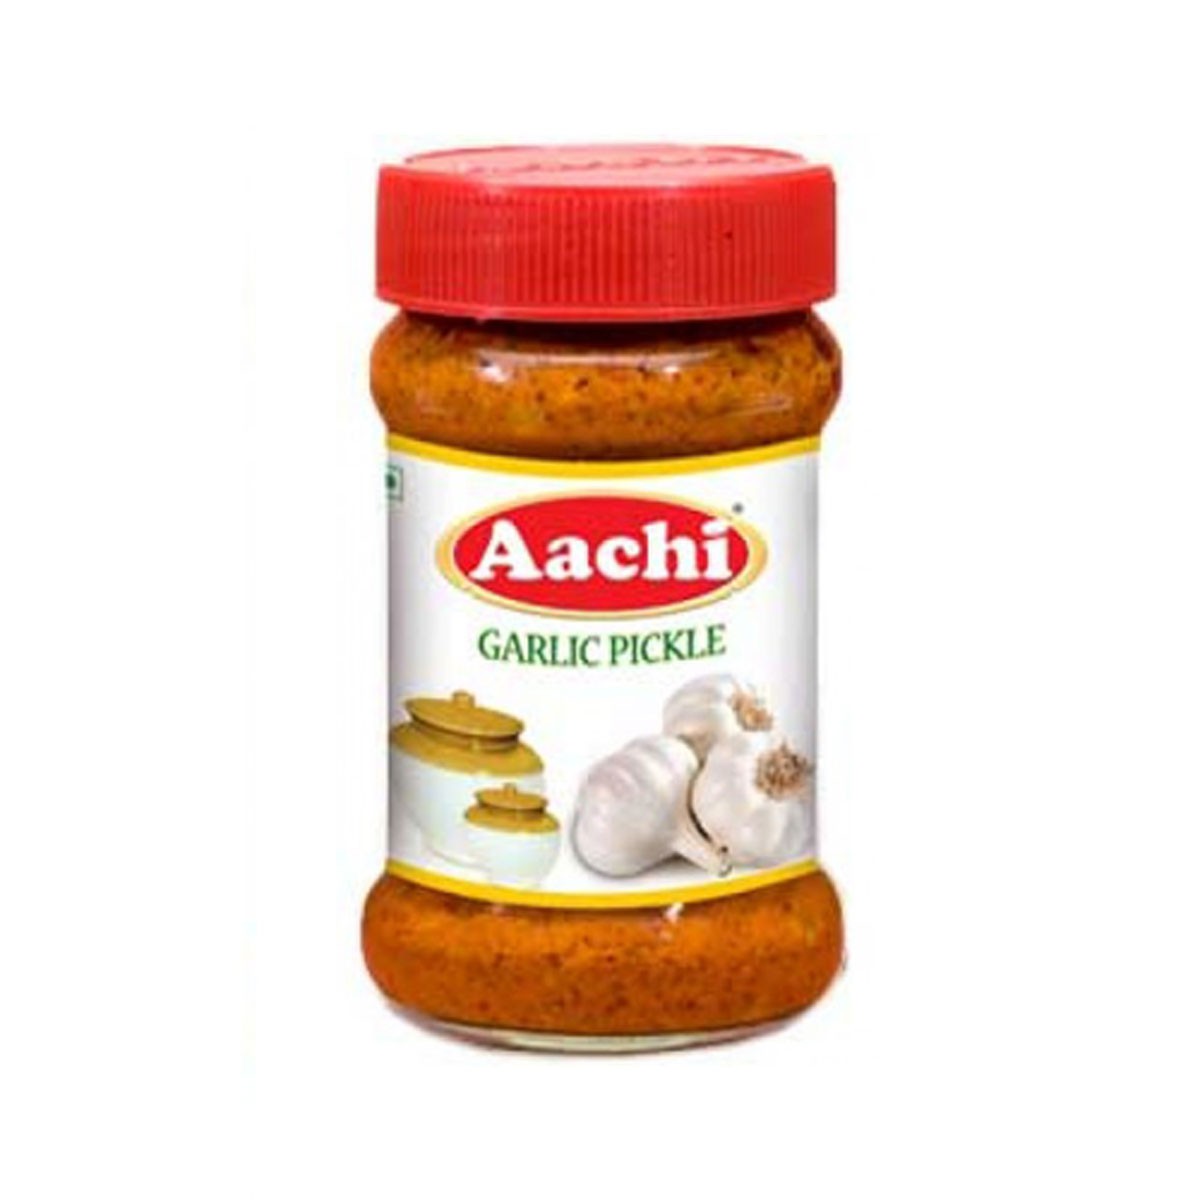 Aachi Garlic Pickle 300g